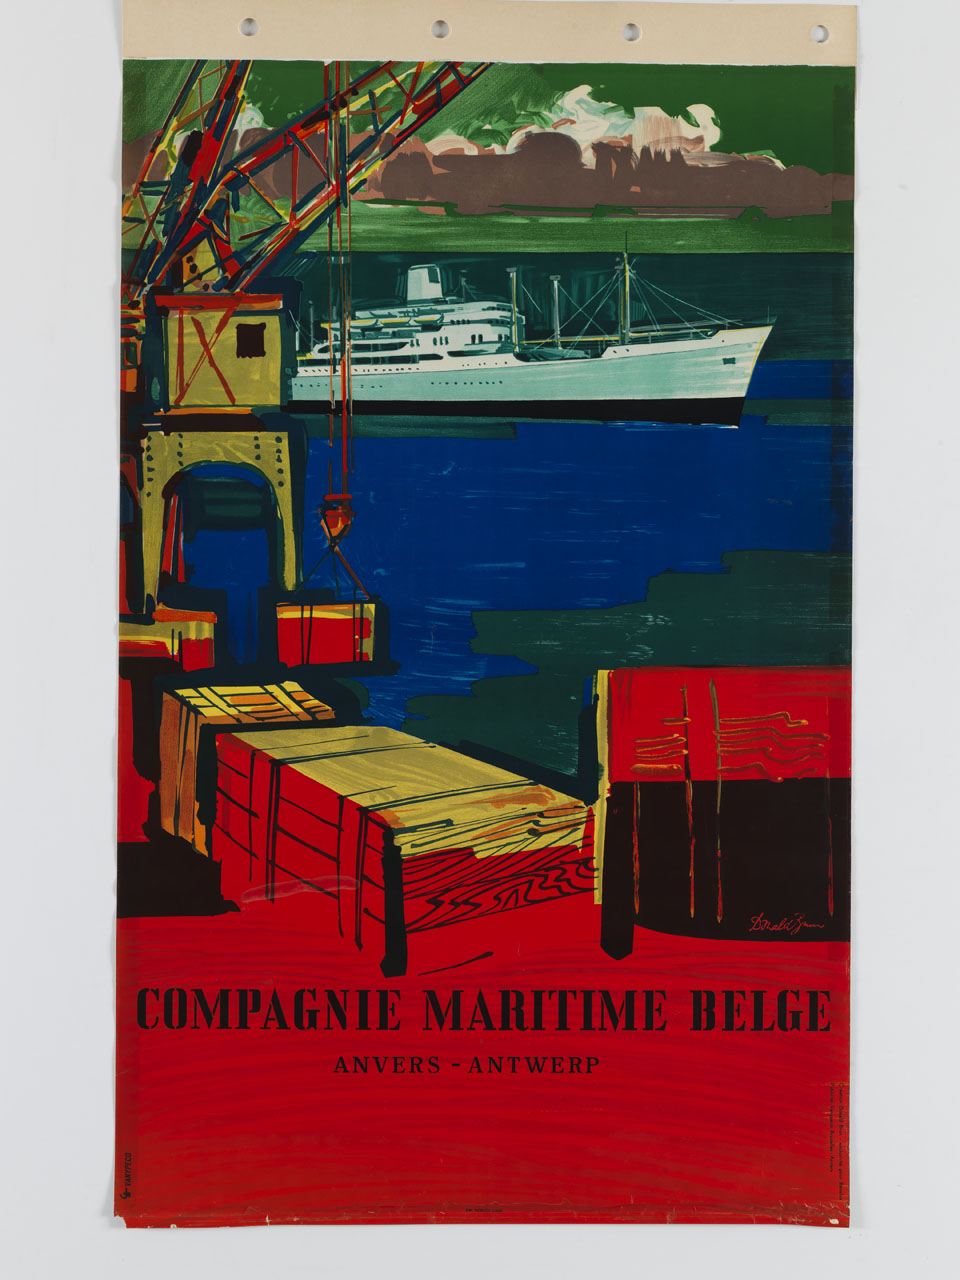 argano scarica casse sulla banchina del porto mentre sta transitando una nave (manifesto) di Brun Donald, Creation Vanypeco (sec. XX)